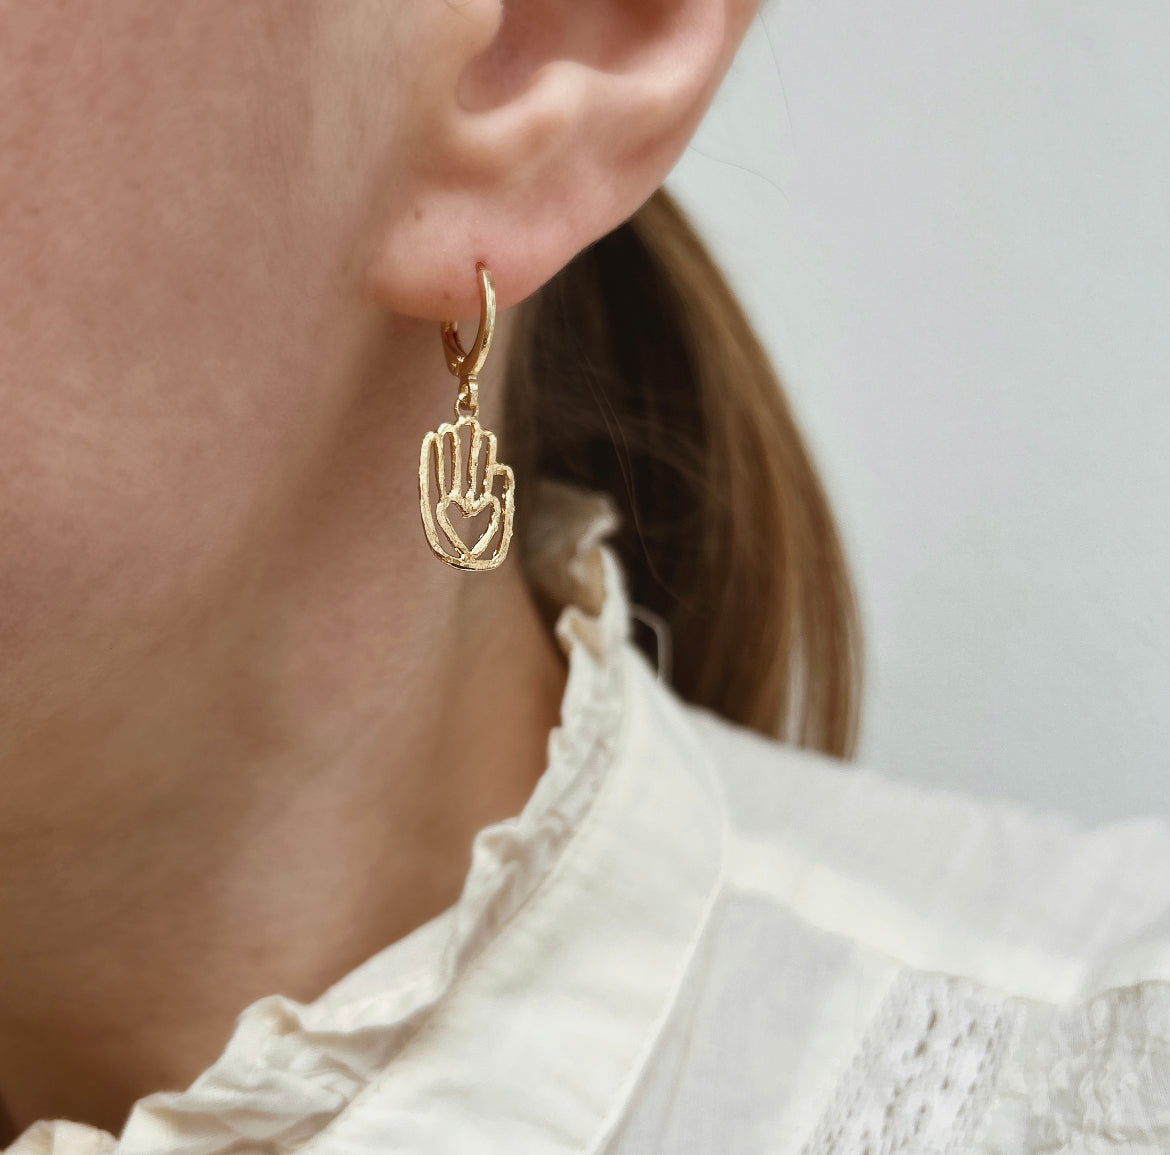 Oaxa earrings